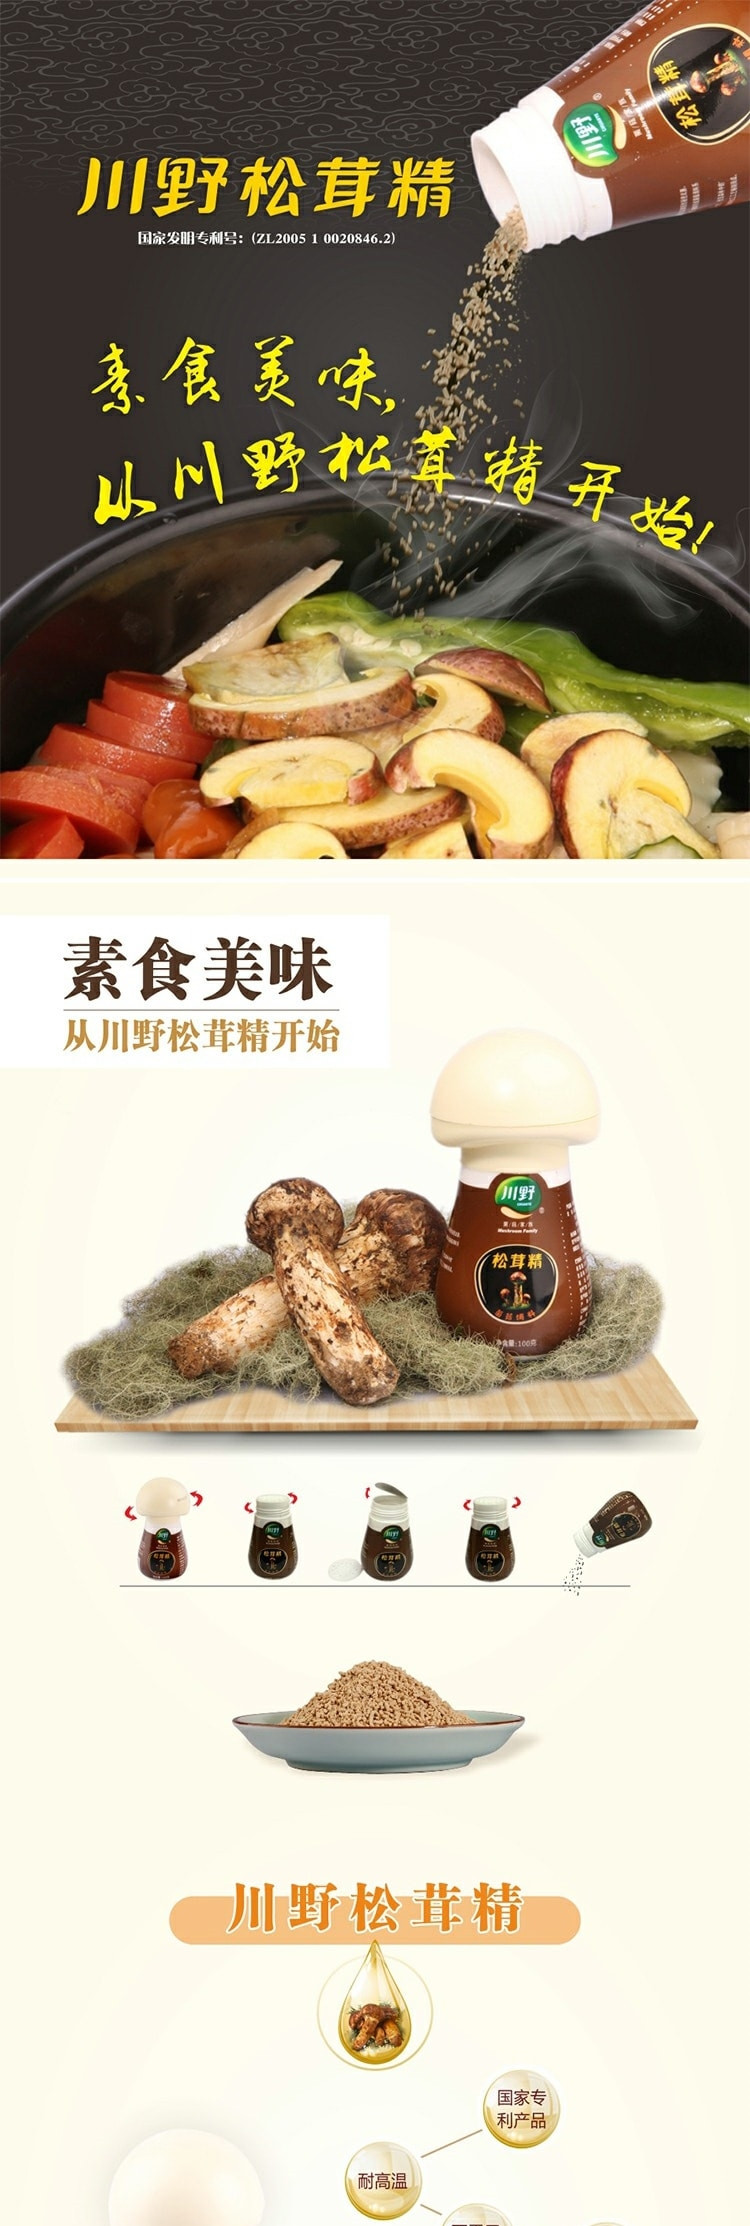  川野 松茸精 蘑菇调味品 代替鸡精 火锅蘸料